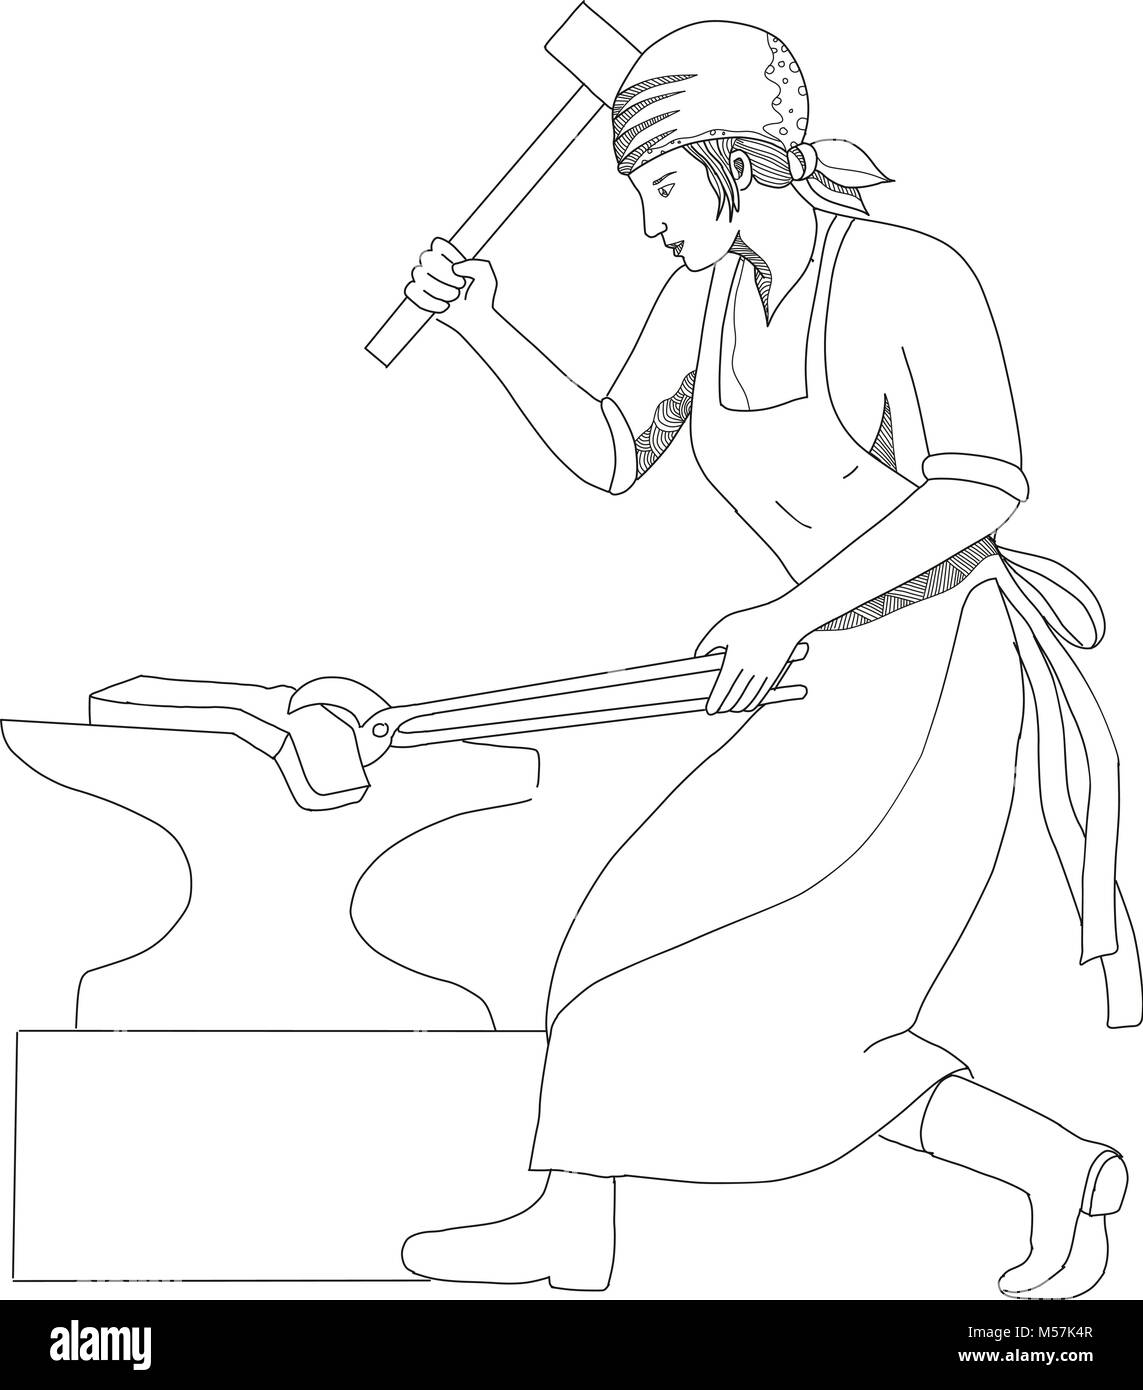 Doodle art illustration d'un forgeron ou femelle métal forgeage orfèvre à l'aide d'un marteau et d'un holding l'acier avec une pince sur enclume fait en mandala s Illustration de Vecteur